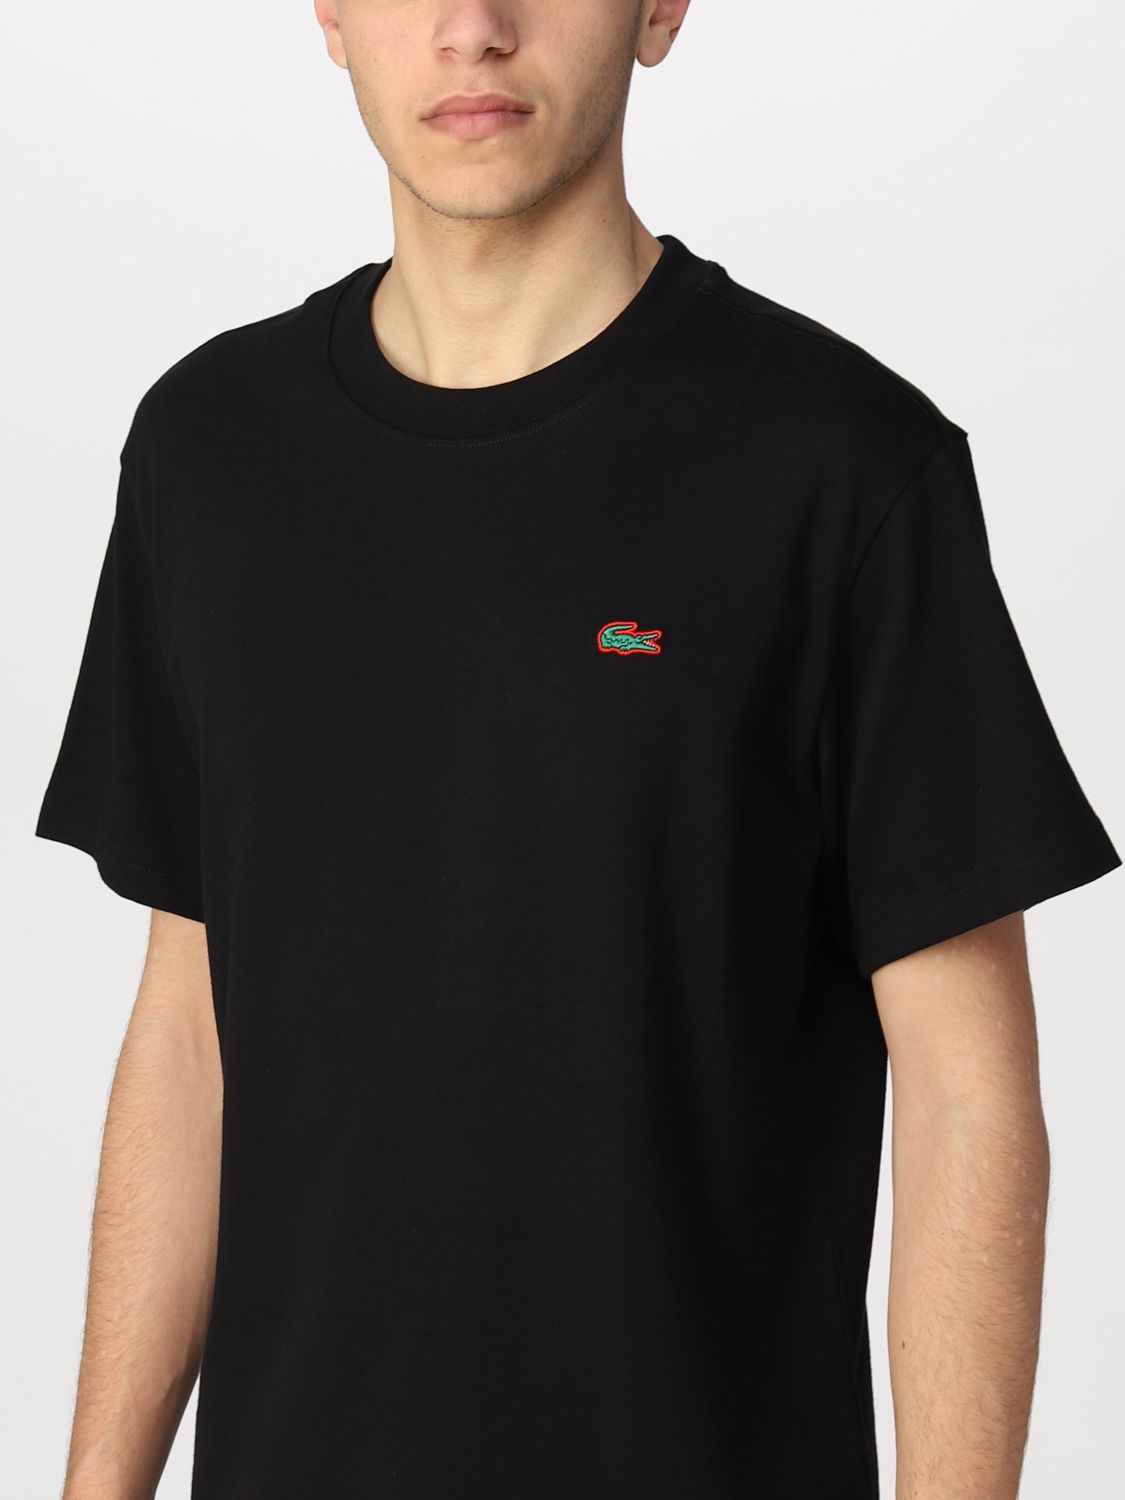 T-shirt Lacoste L!Ve: Lacoste L! Ve t-shirt in cotton with logo black 3